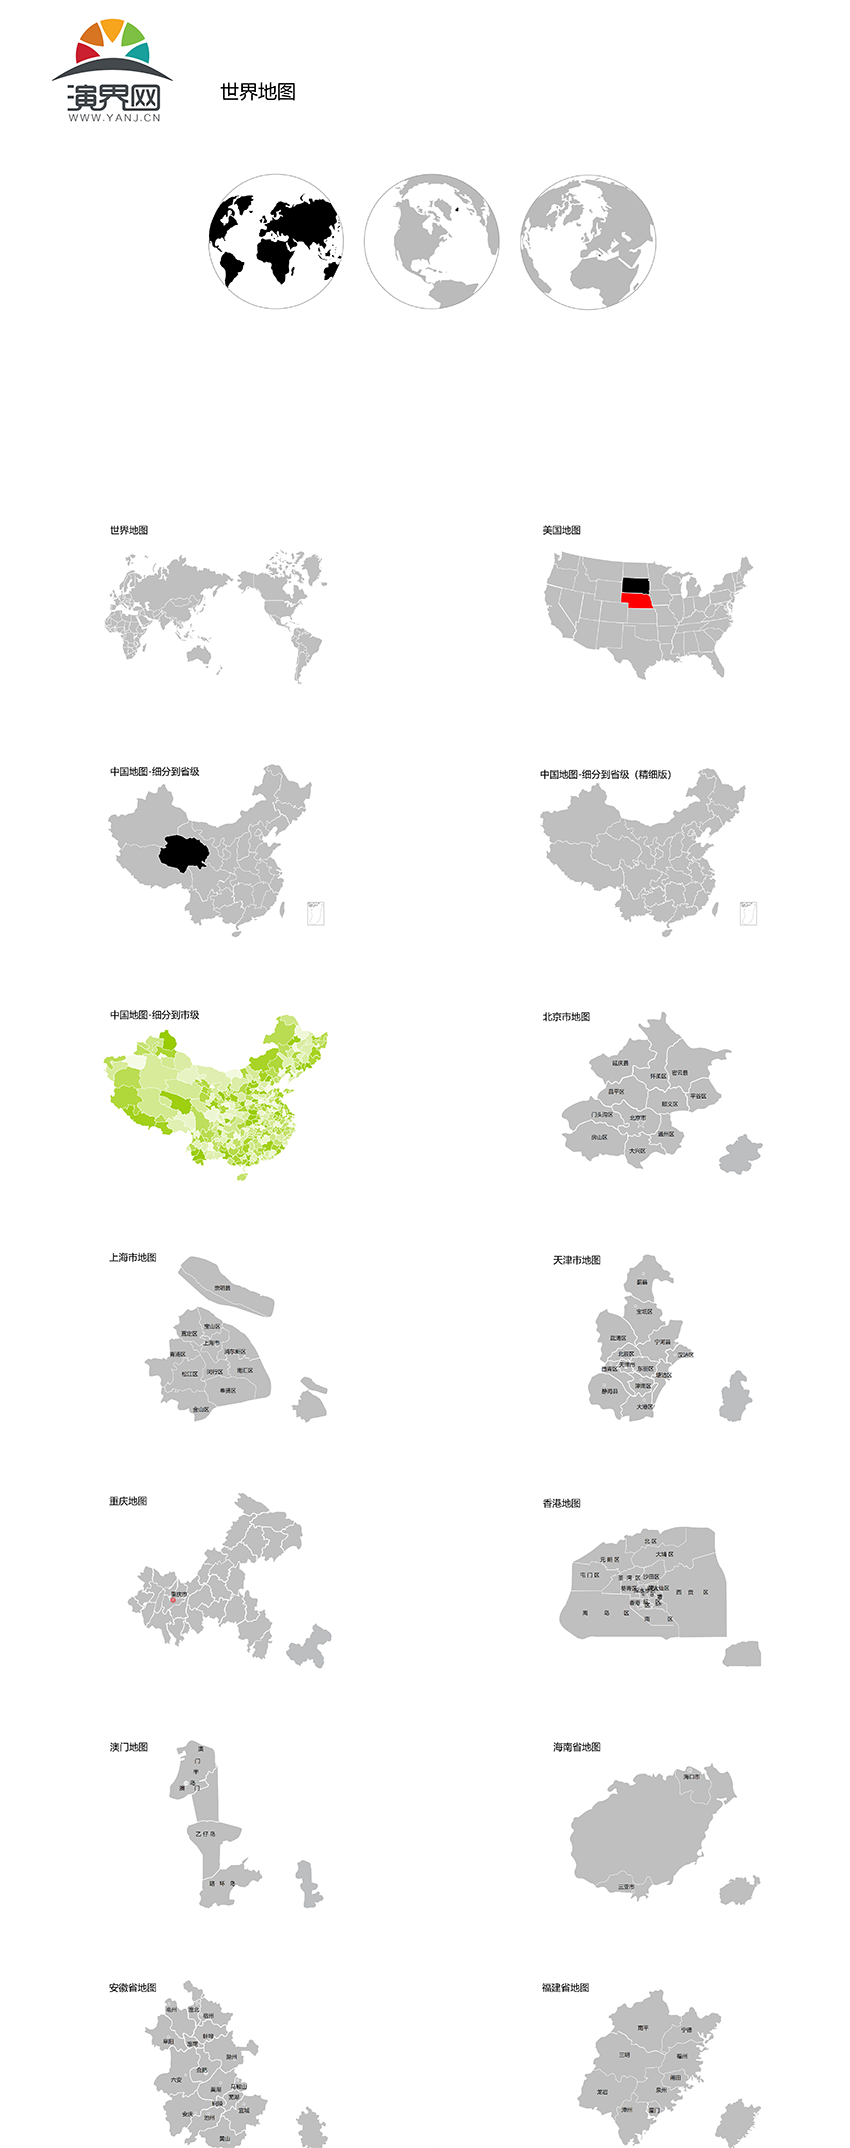 地图分区keynote 中国各省市可编辑地图ppt素材下载 演界网